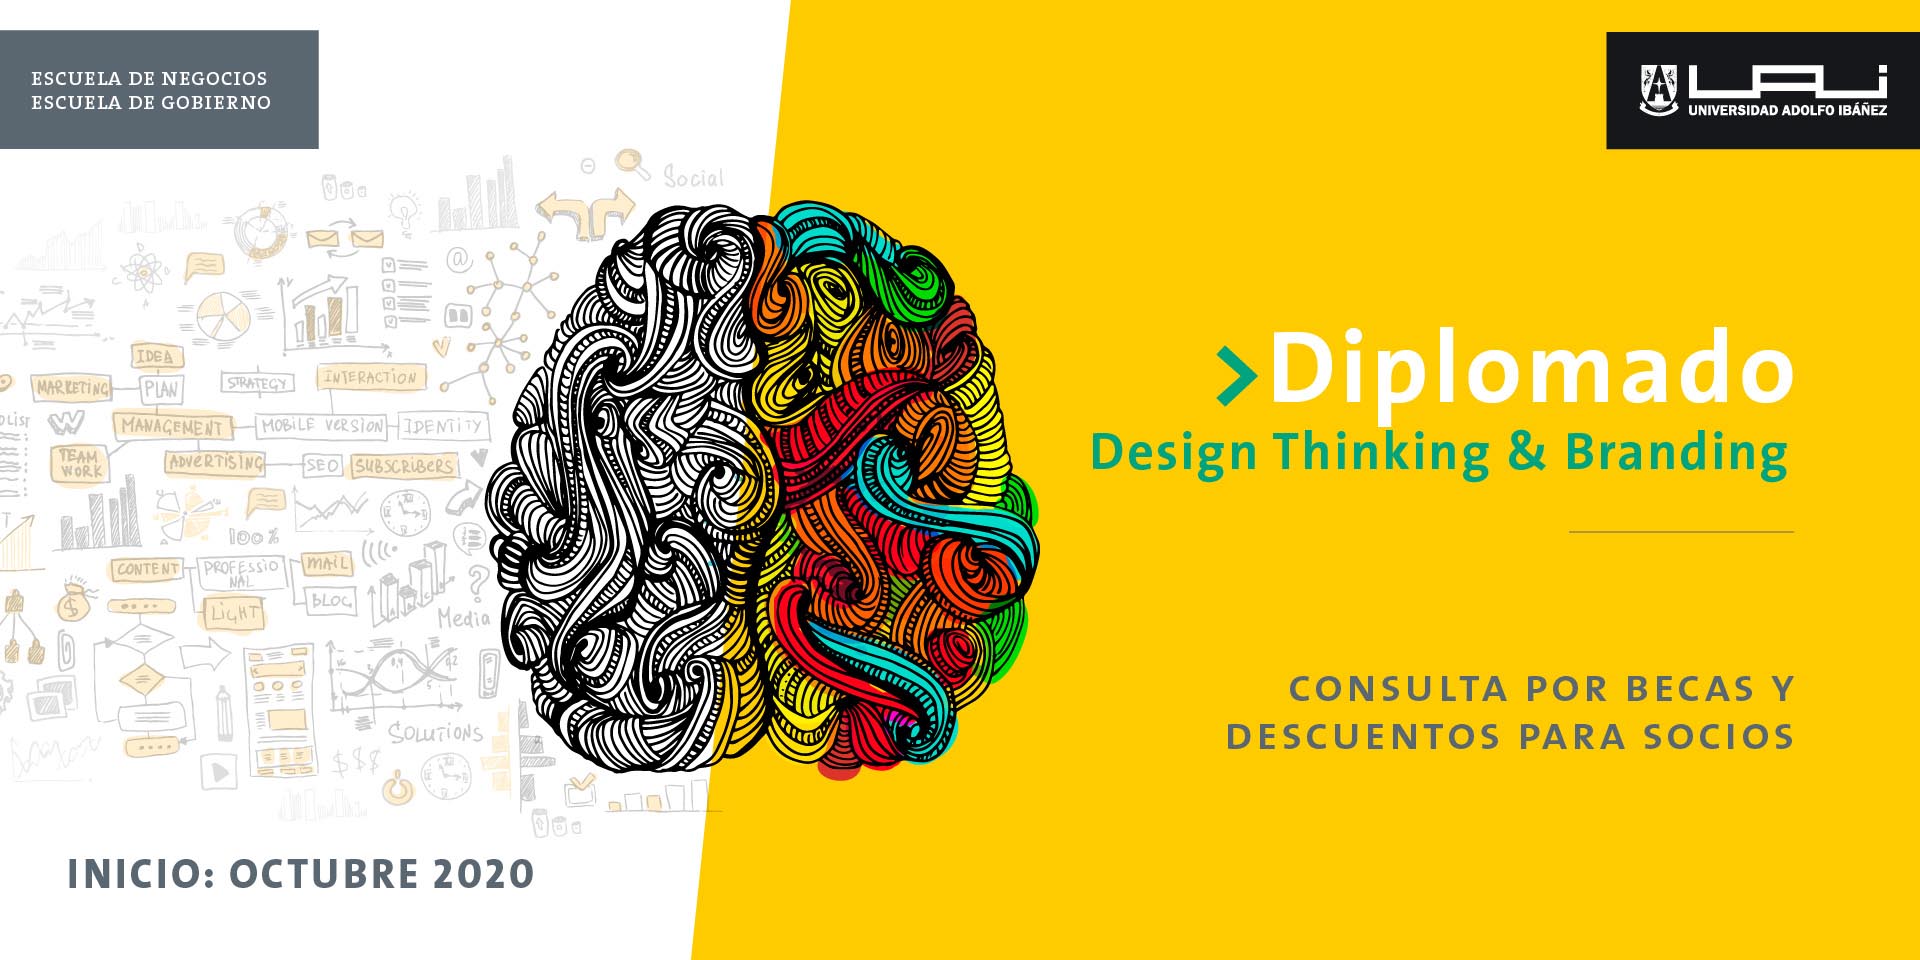 Descuento para socios AMDD en el Diplomado en Design thinking & branding de la Universidad Adolfo Ibañez